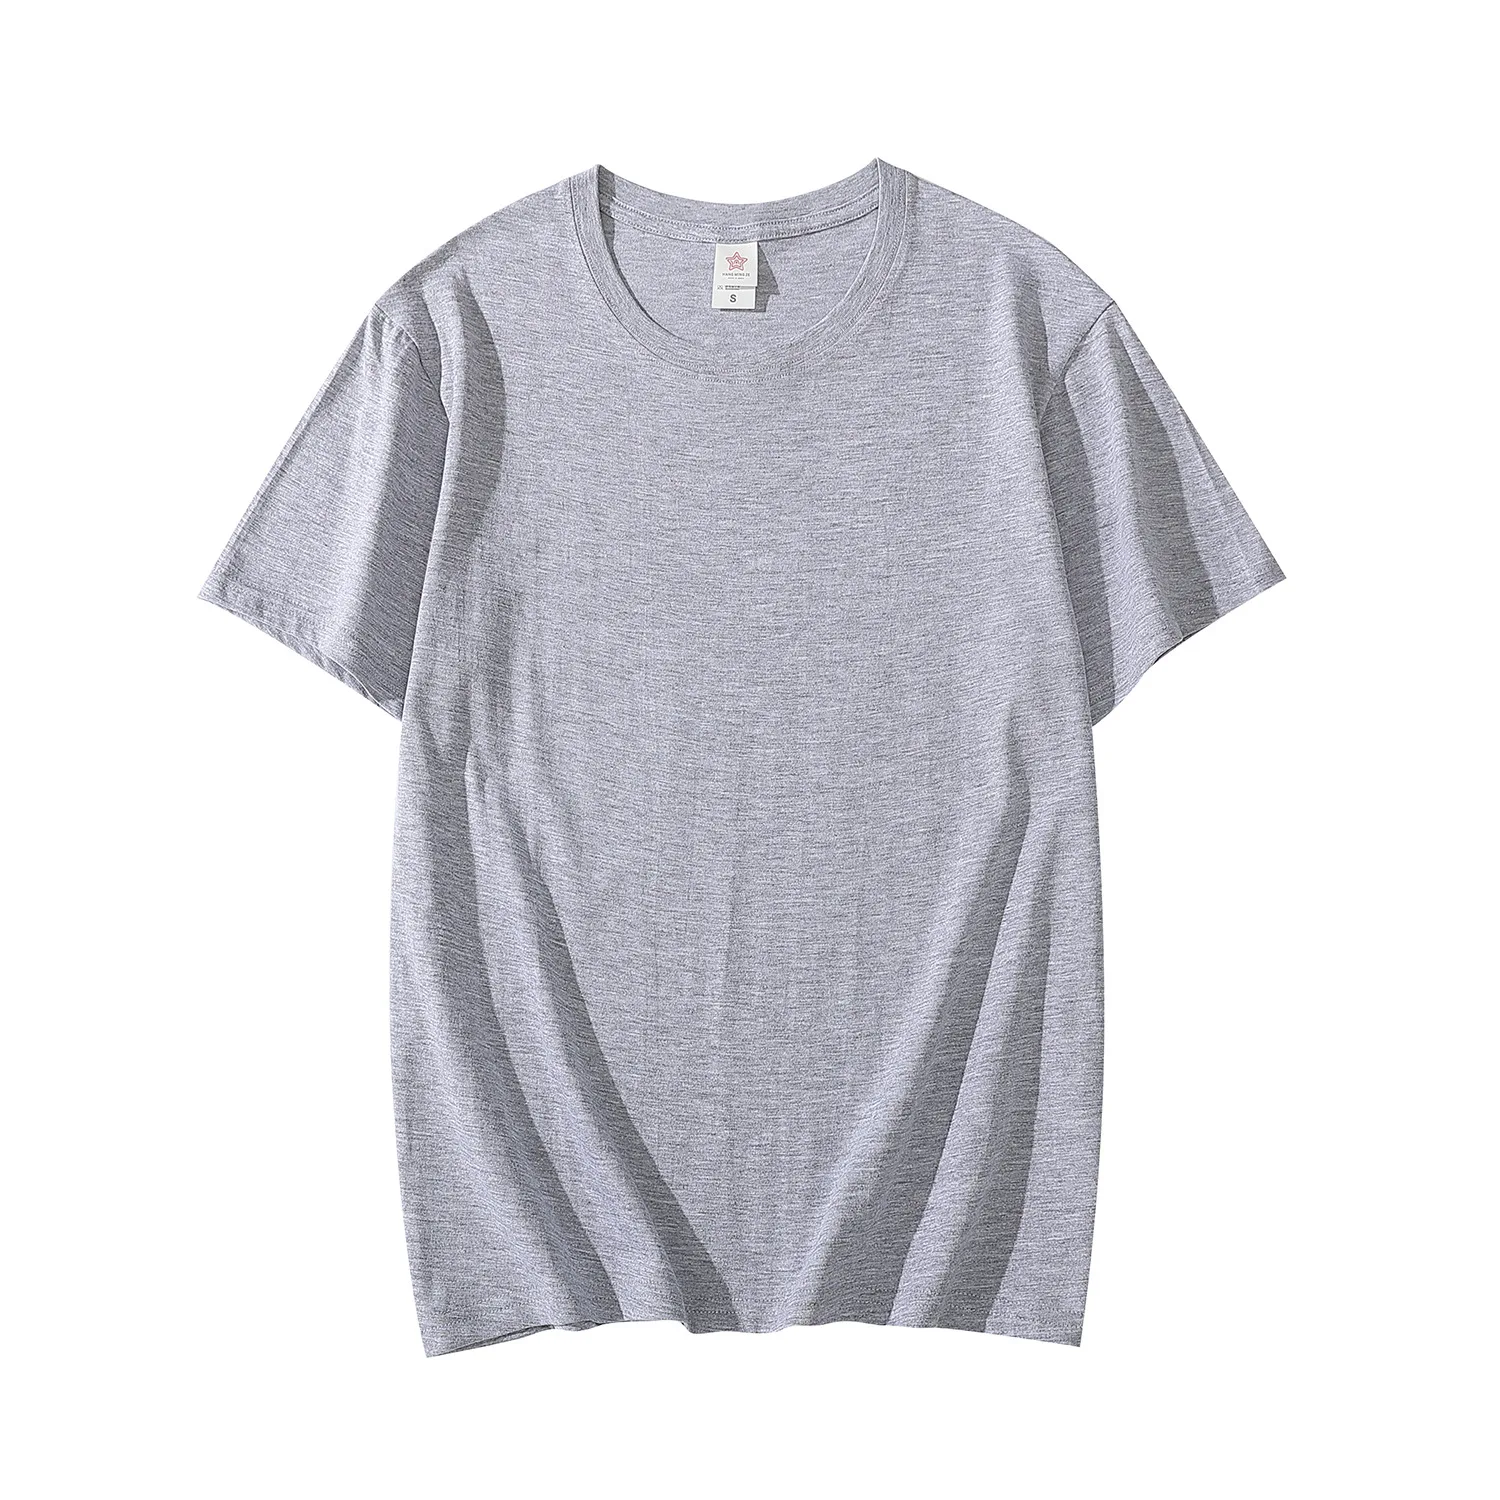 Penye pamuk kısa kollu tişört yaz moda Amerikan tarzı - 2